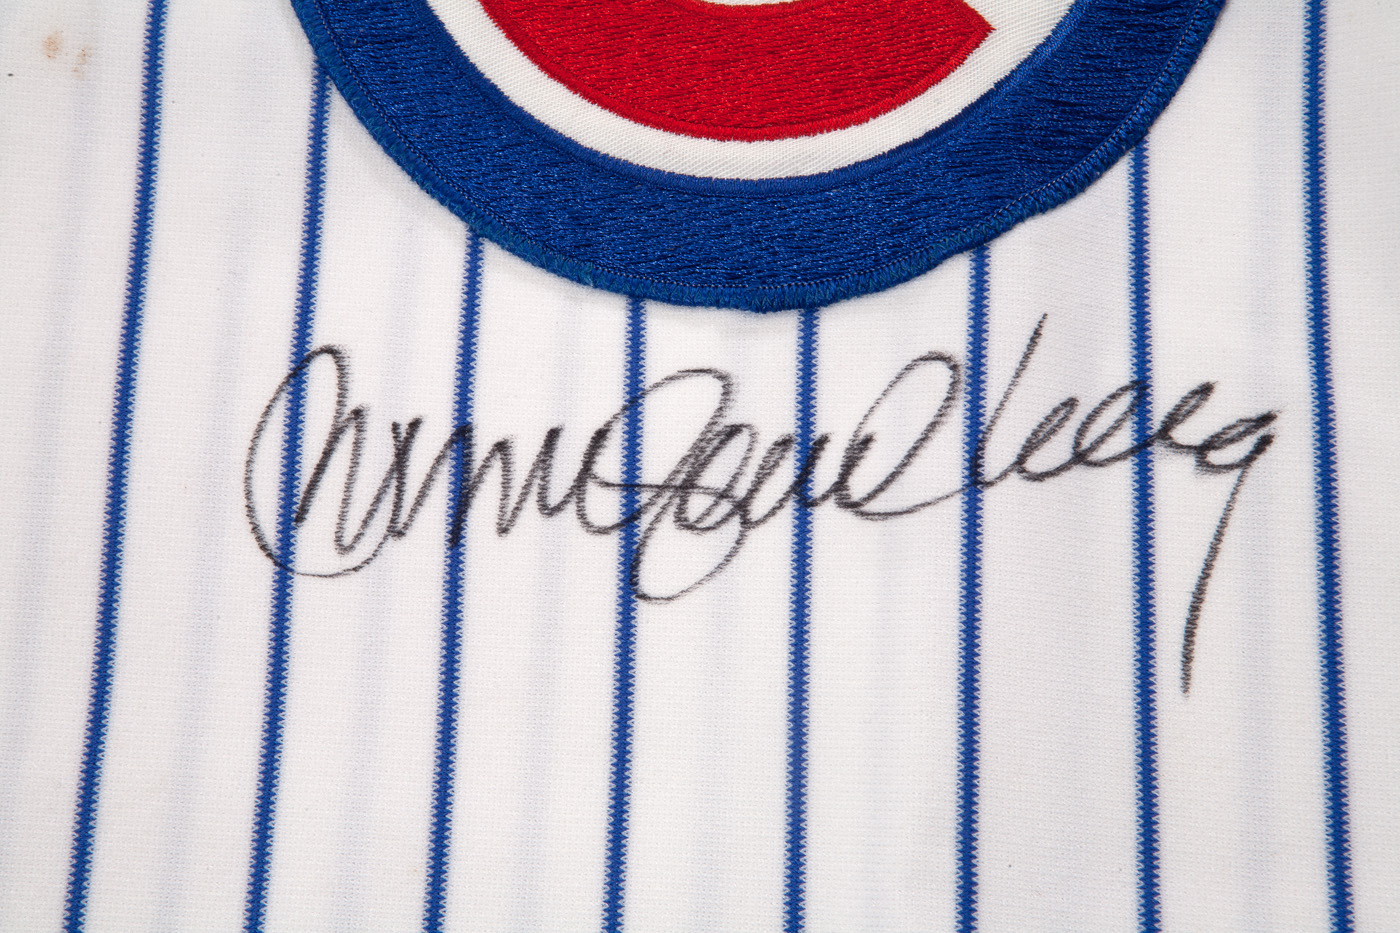 Ryne Sandberg Autographed Signed Framed Chicago Cubs Jersey -  Denmark